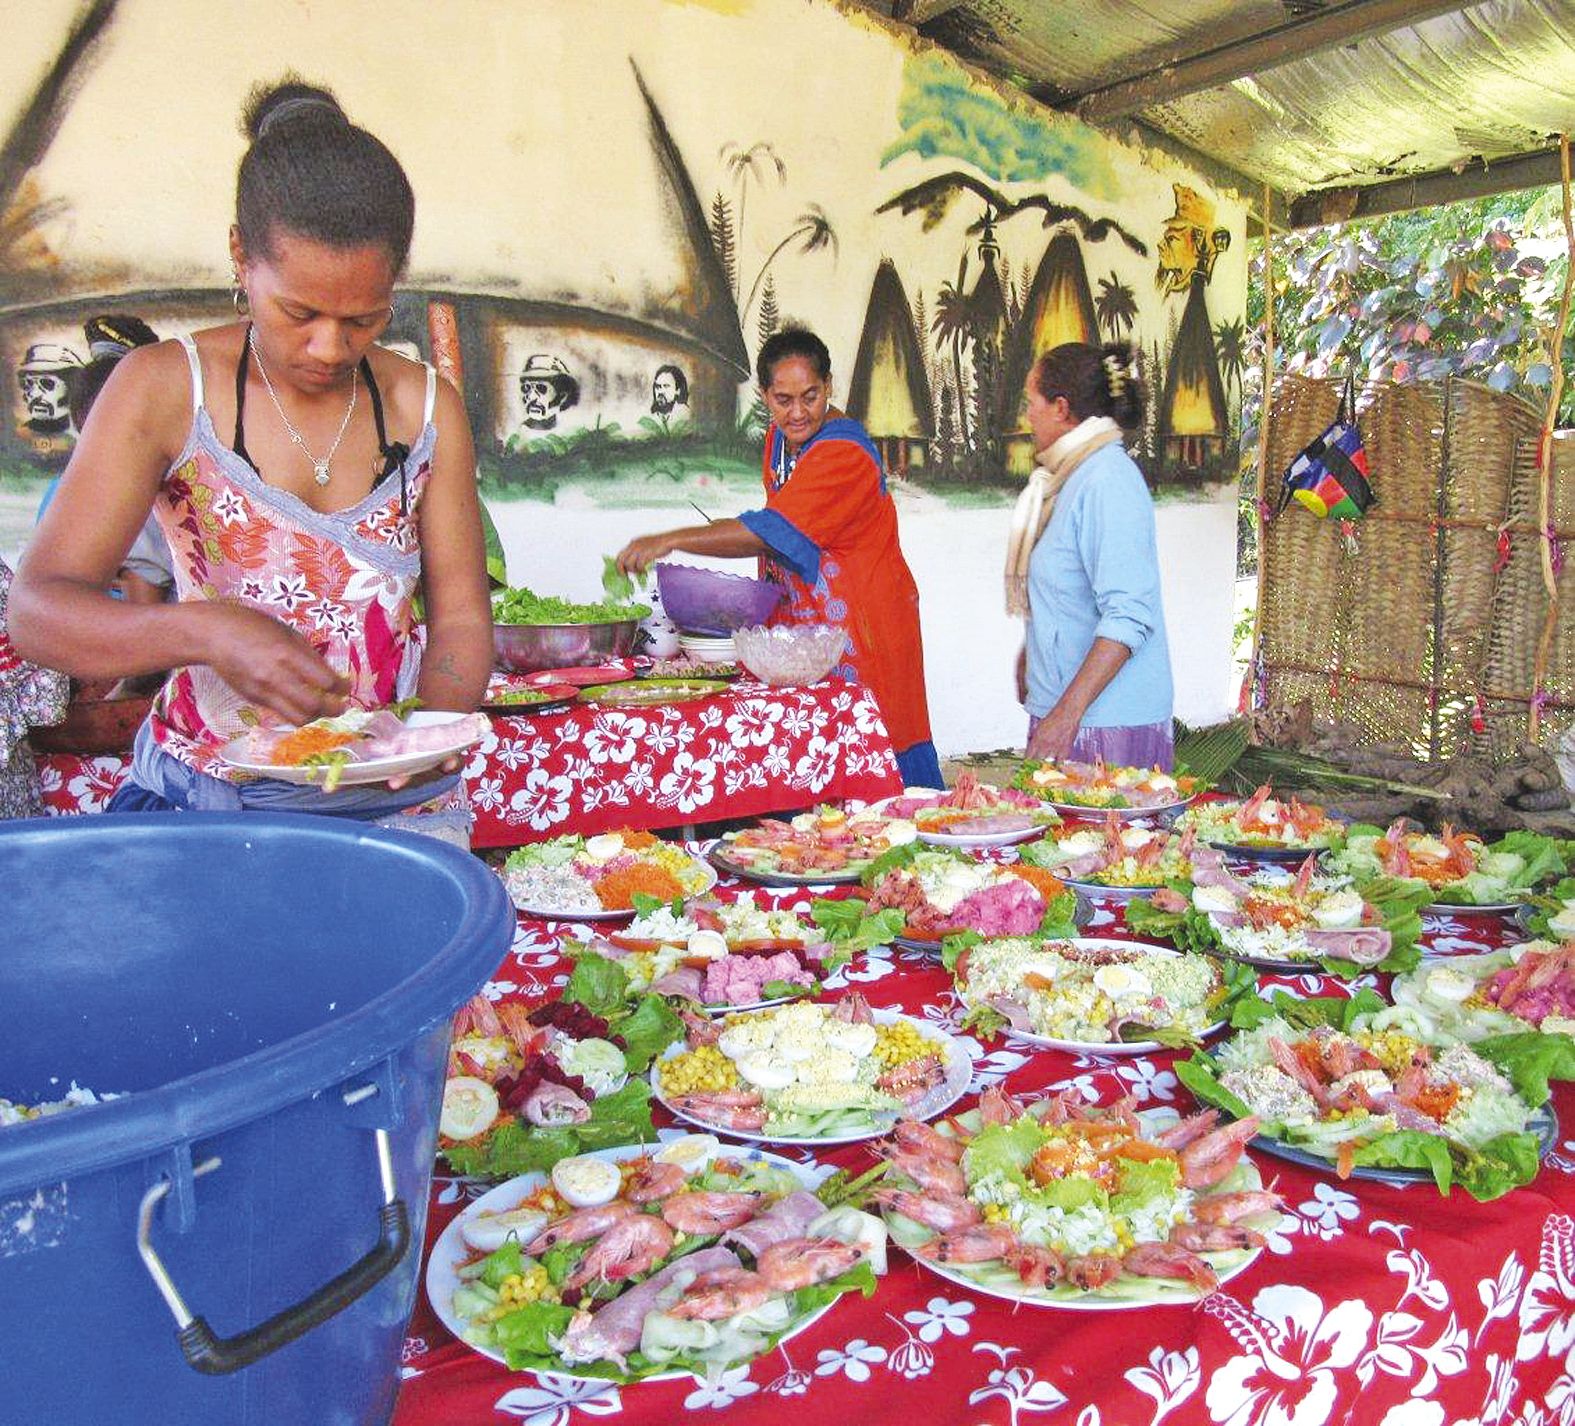 Les femmes se sont activement mises aux fourneaux pour nourrir des centaines d'invités.